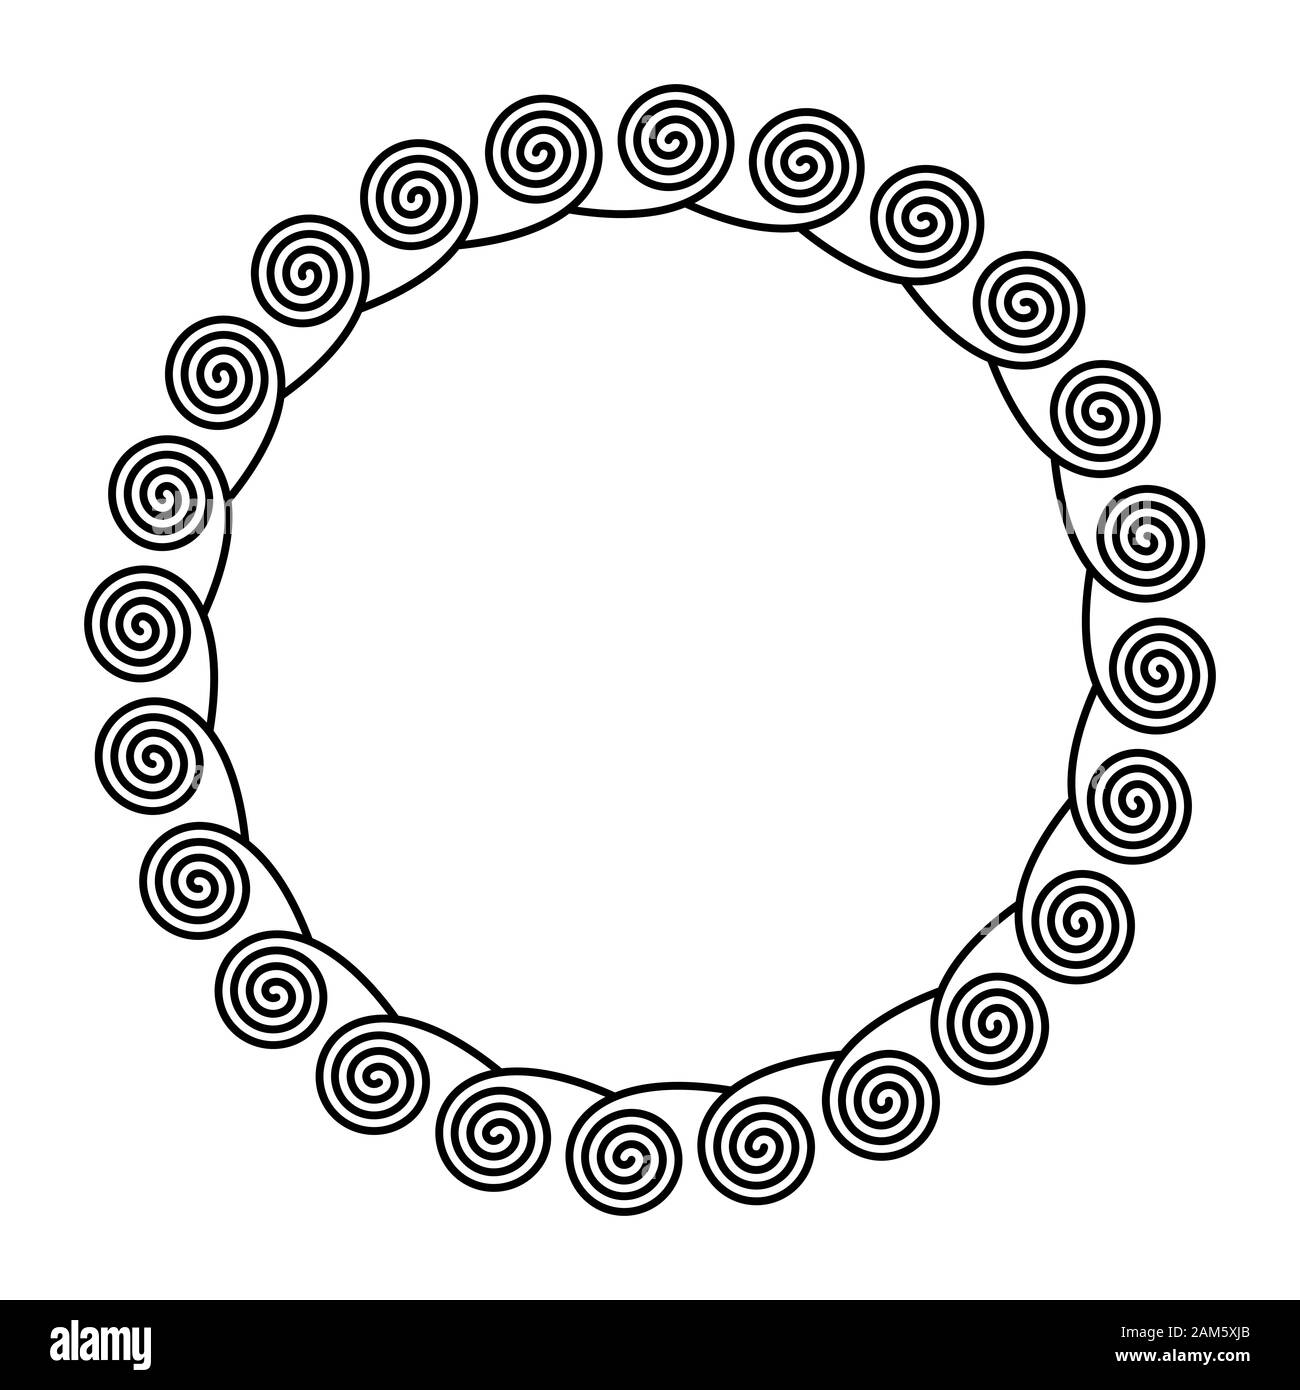 Kreis Rahmen durch Spiralen auf der Außenseite. Lineare Spiralen bilden einen dekorativen Muster und Muster, die durch wiederholte Linien gebaut. Stockfoto